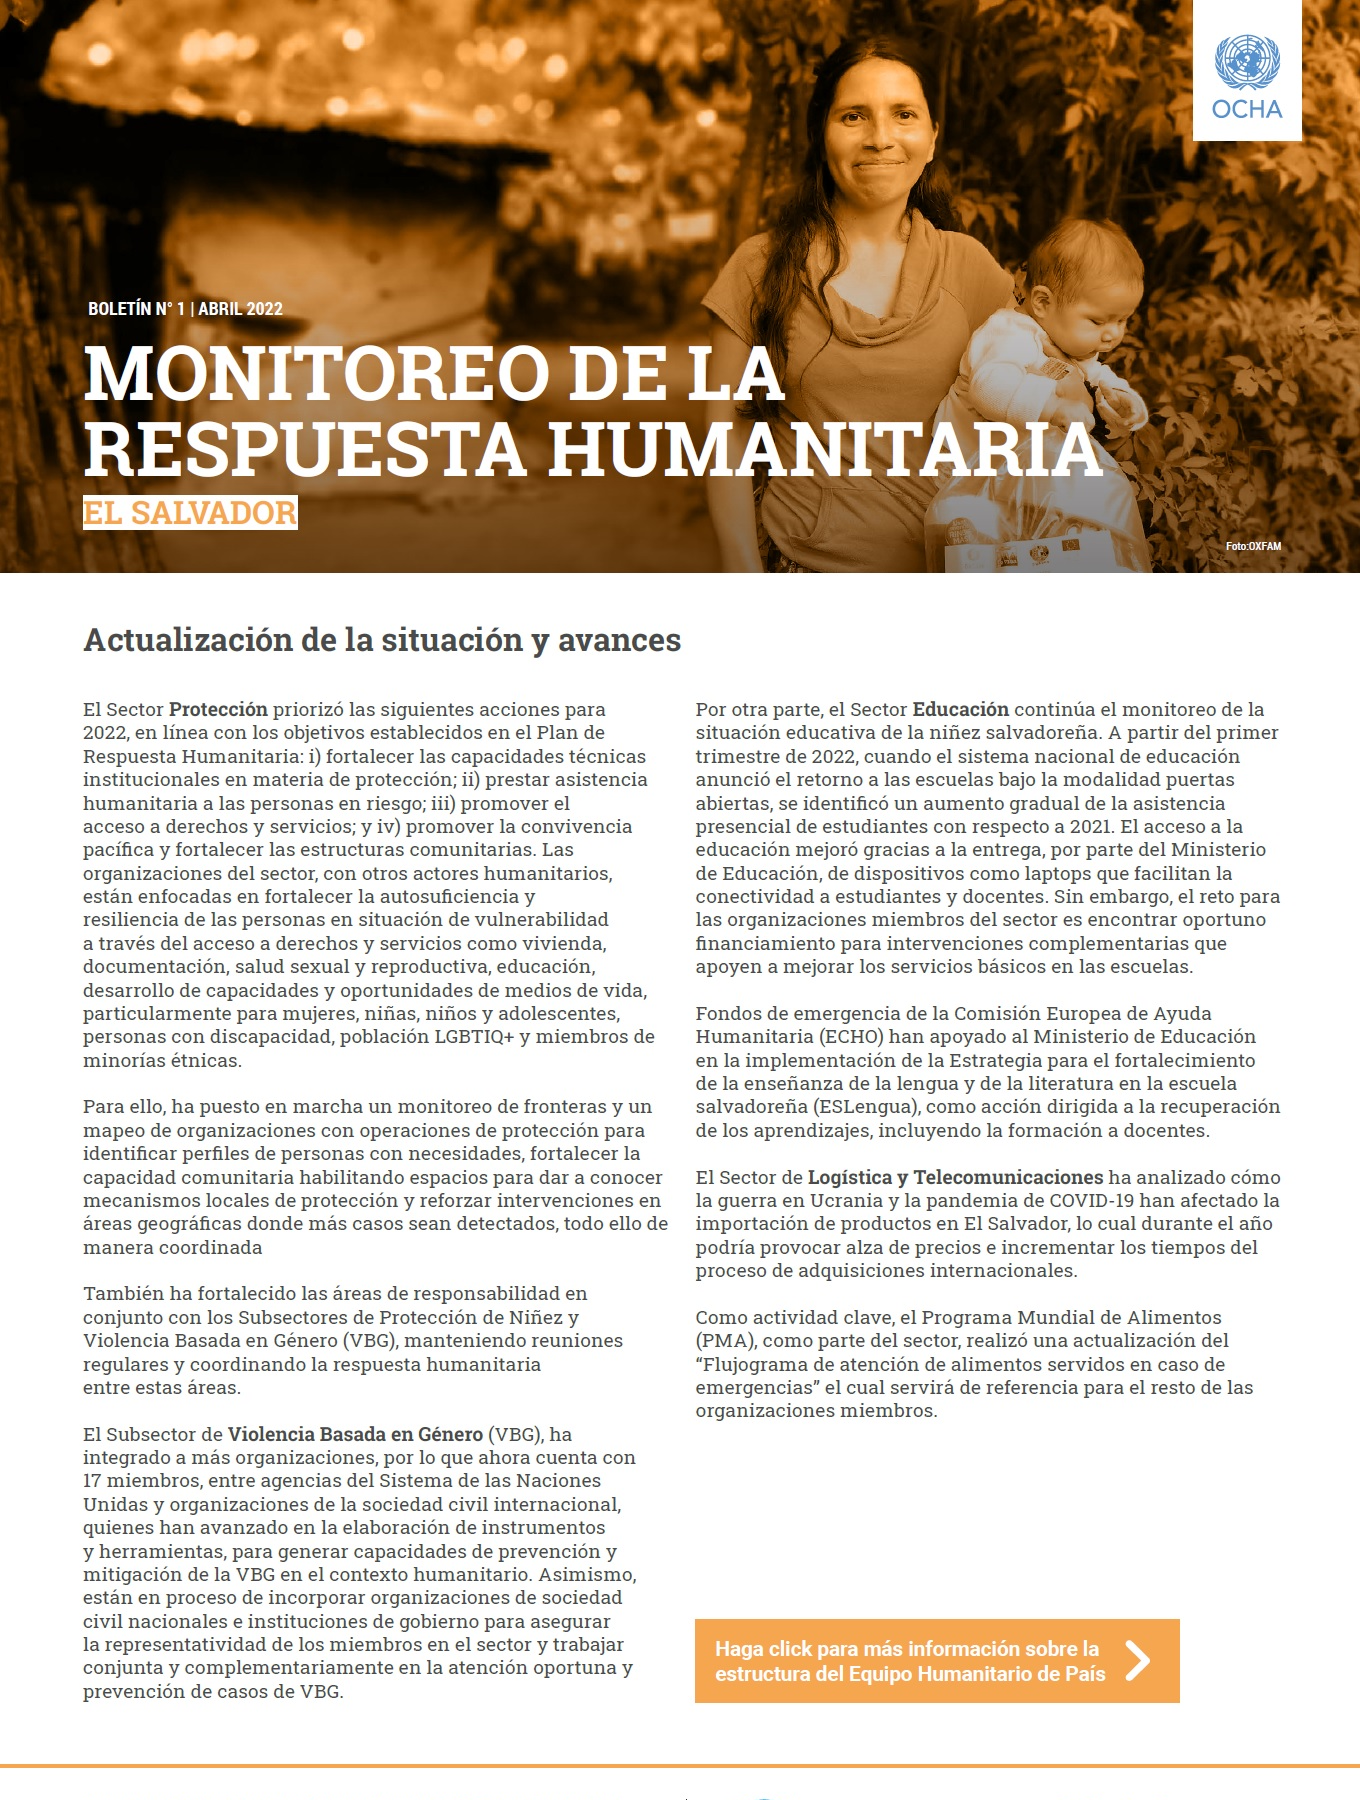 Boletín No. 1 del Equipo Humanitario de País (EHP)